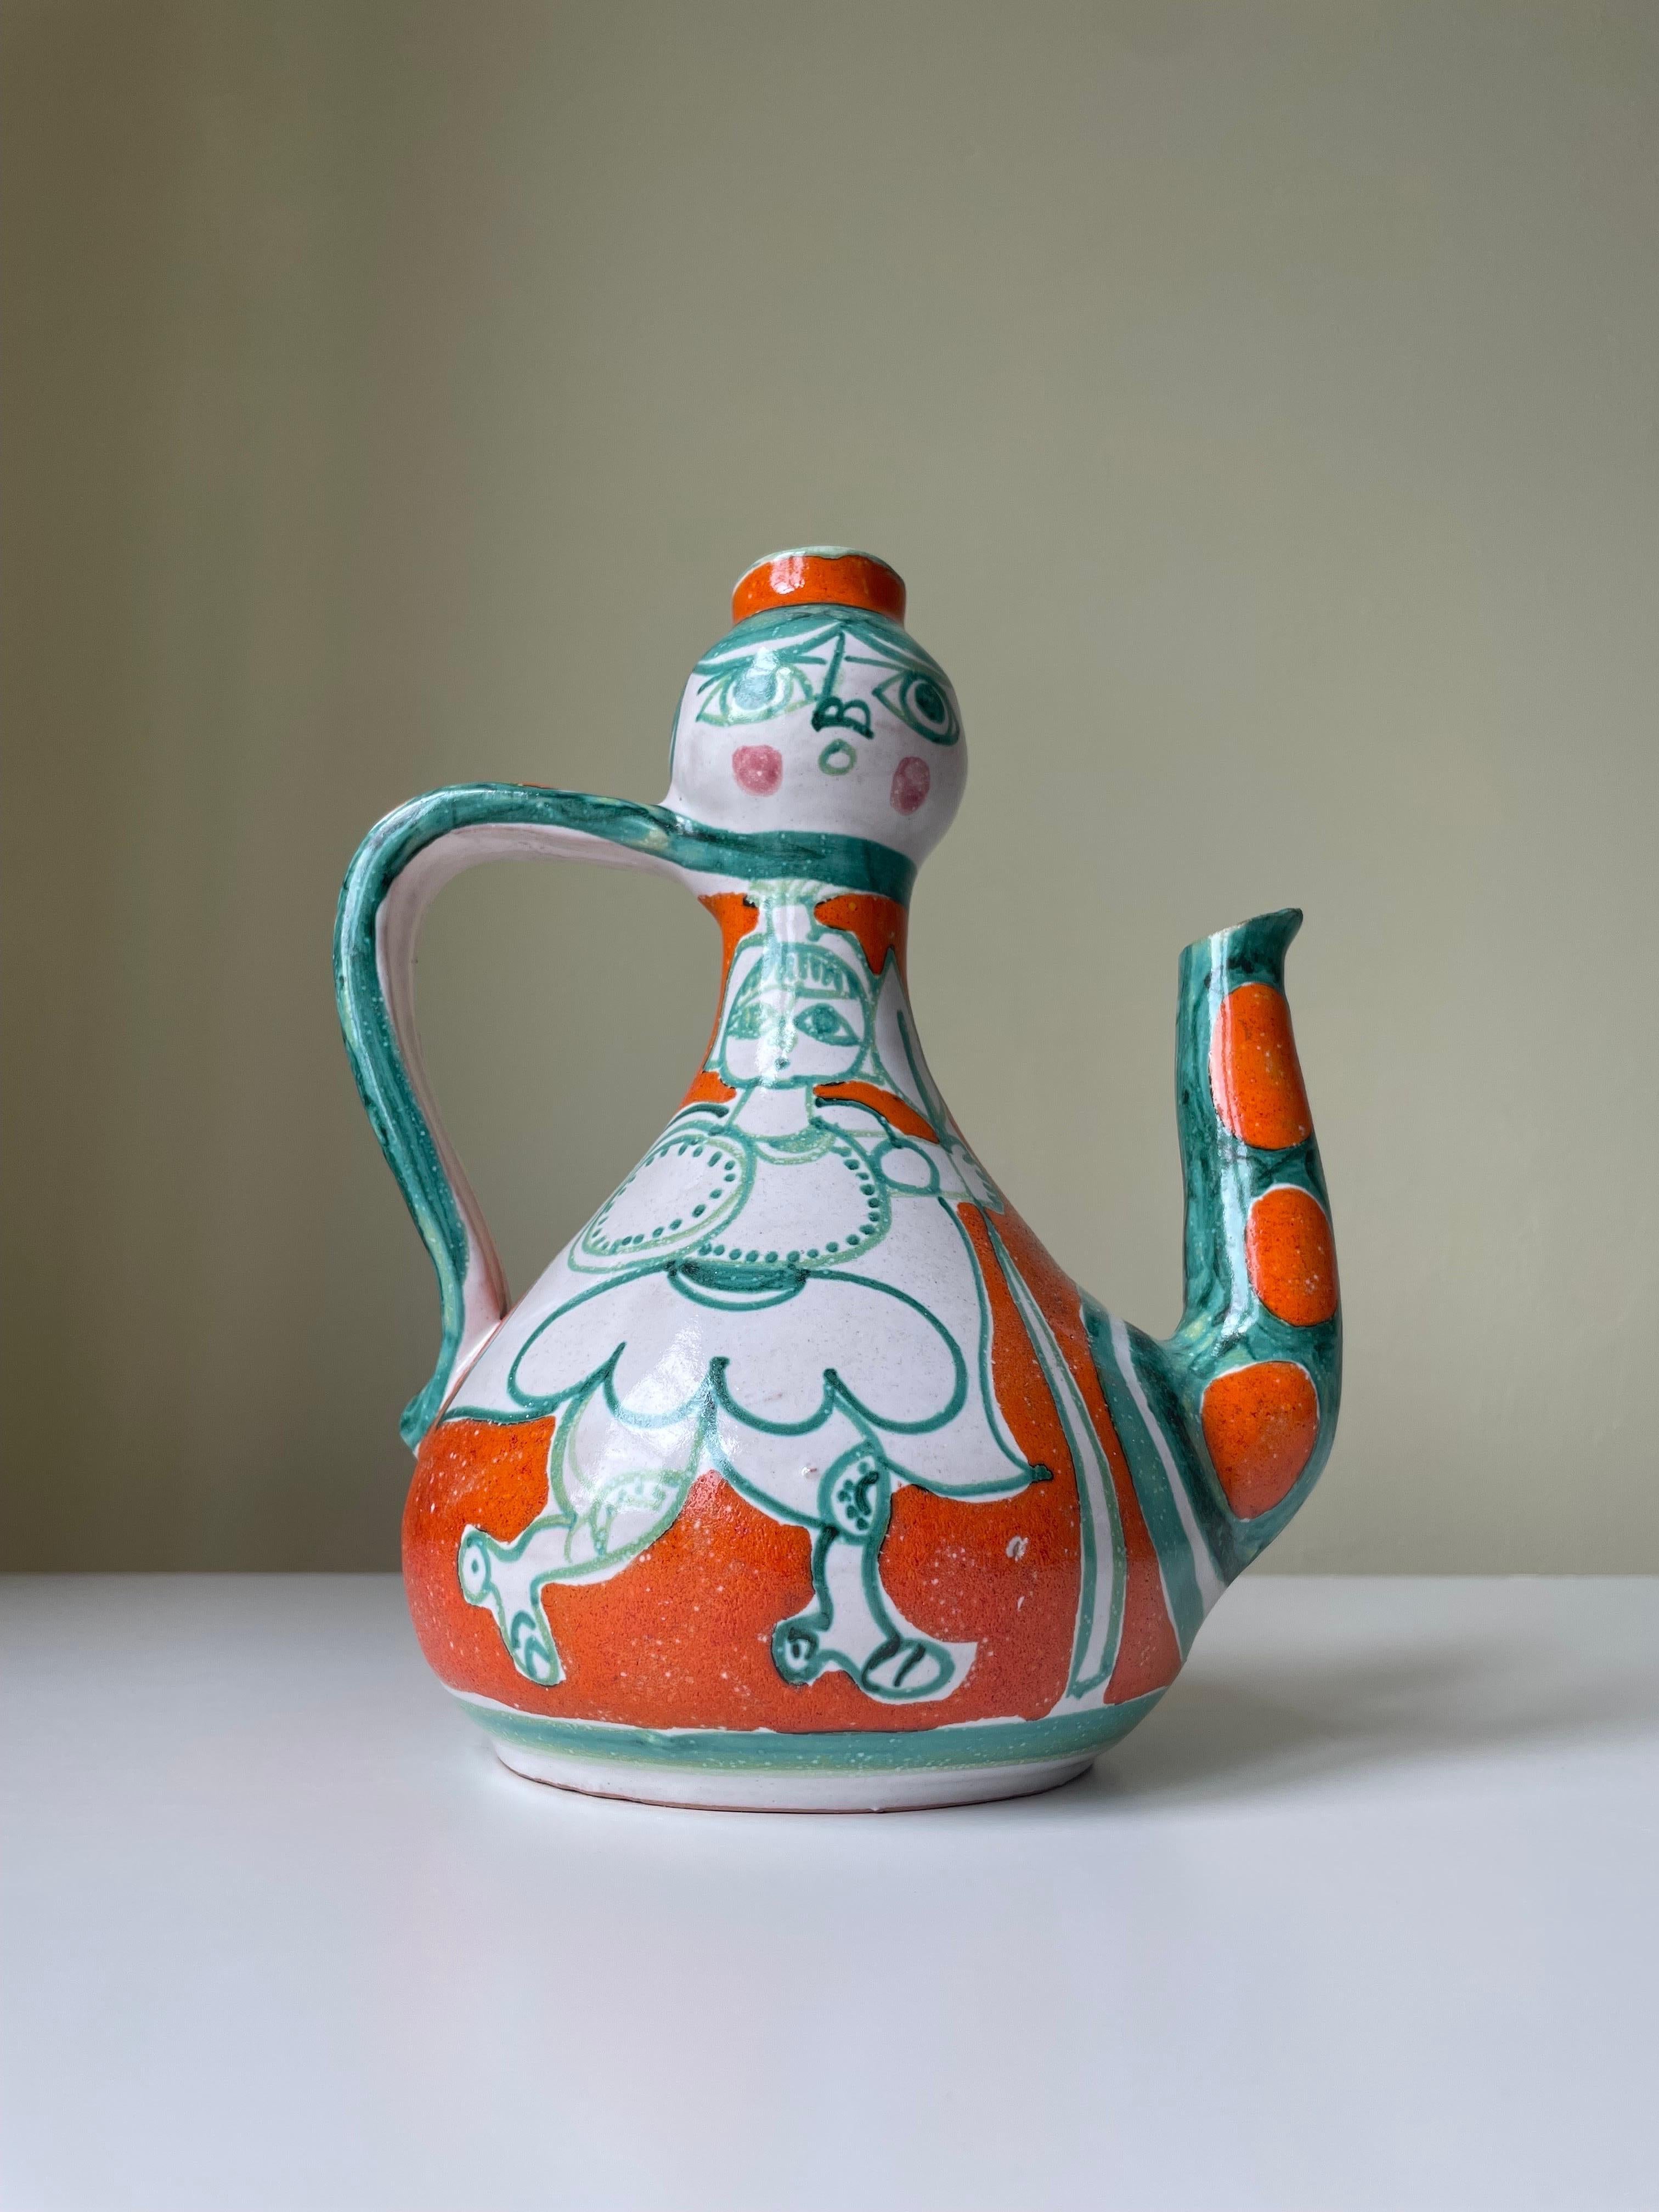 Ceramic Giovanni de Simone Picasso Style Italian Figurative Pitcher Vase, 1964